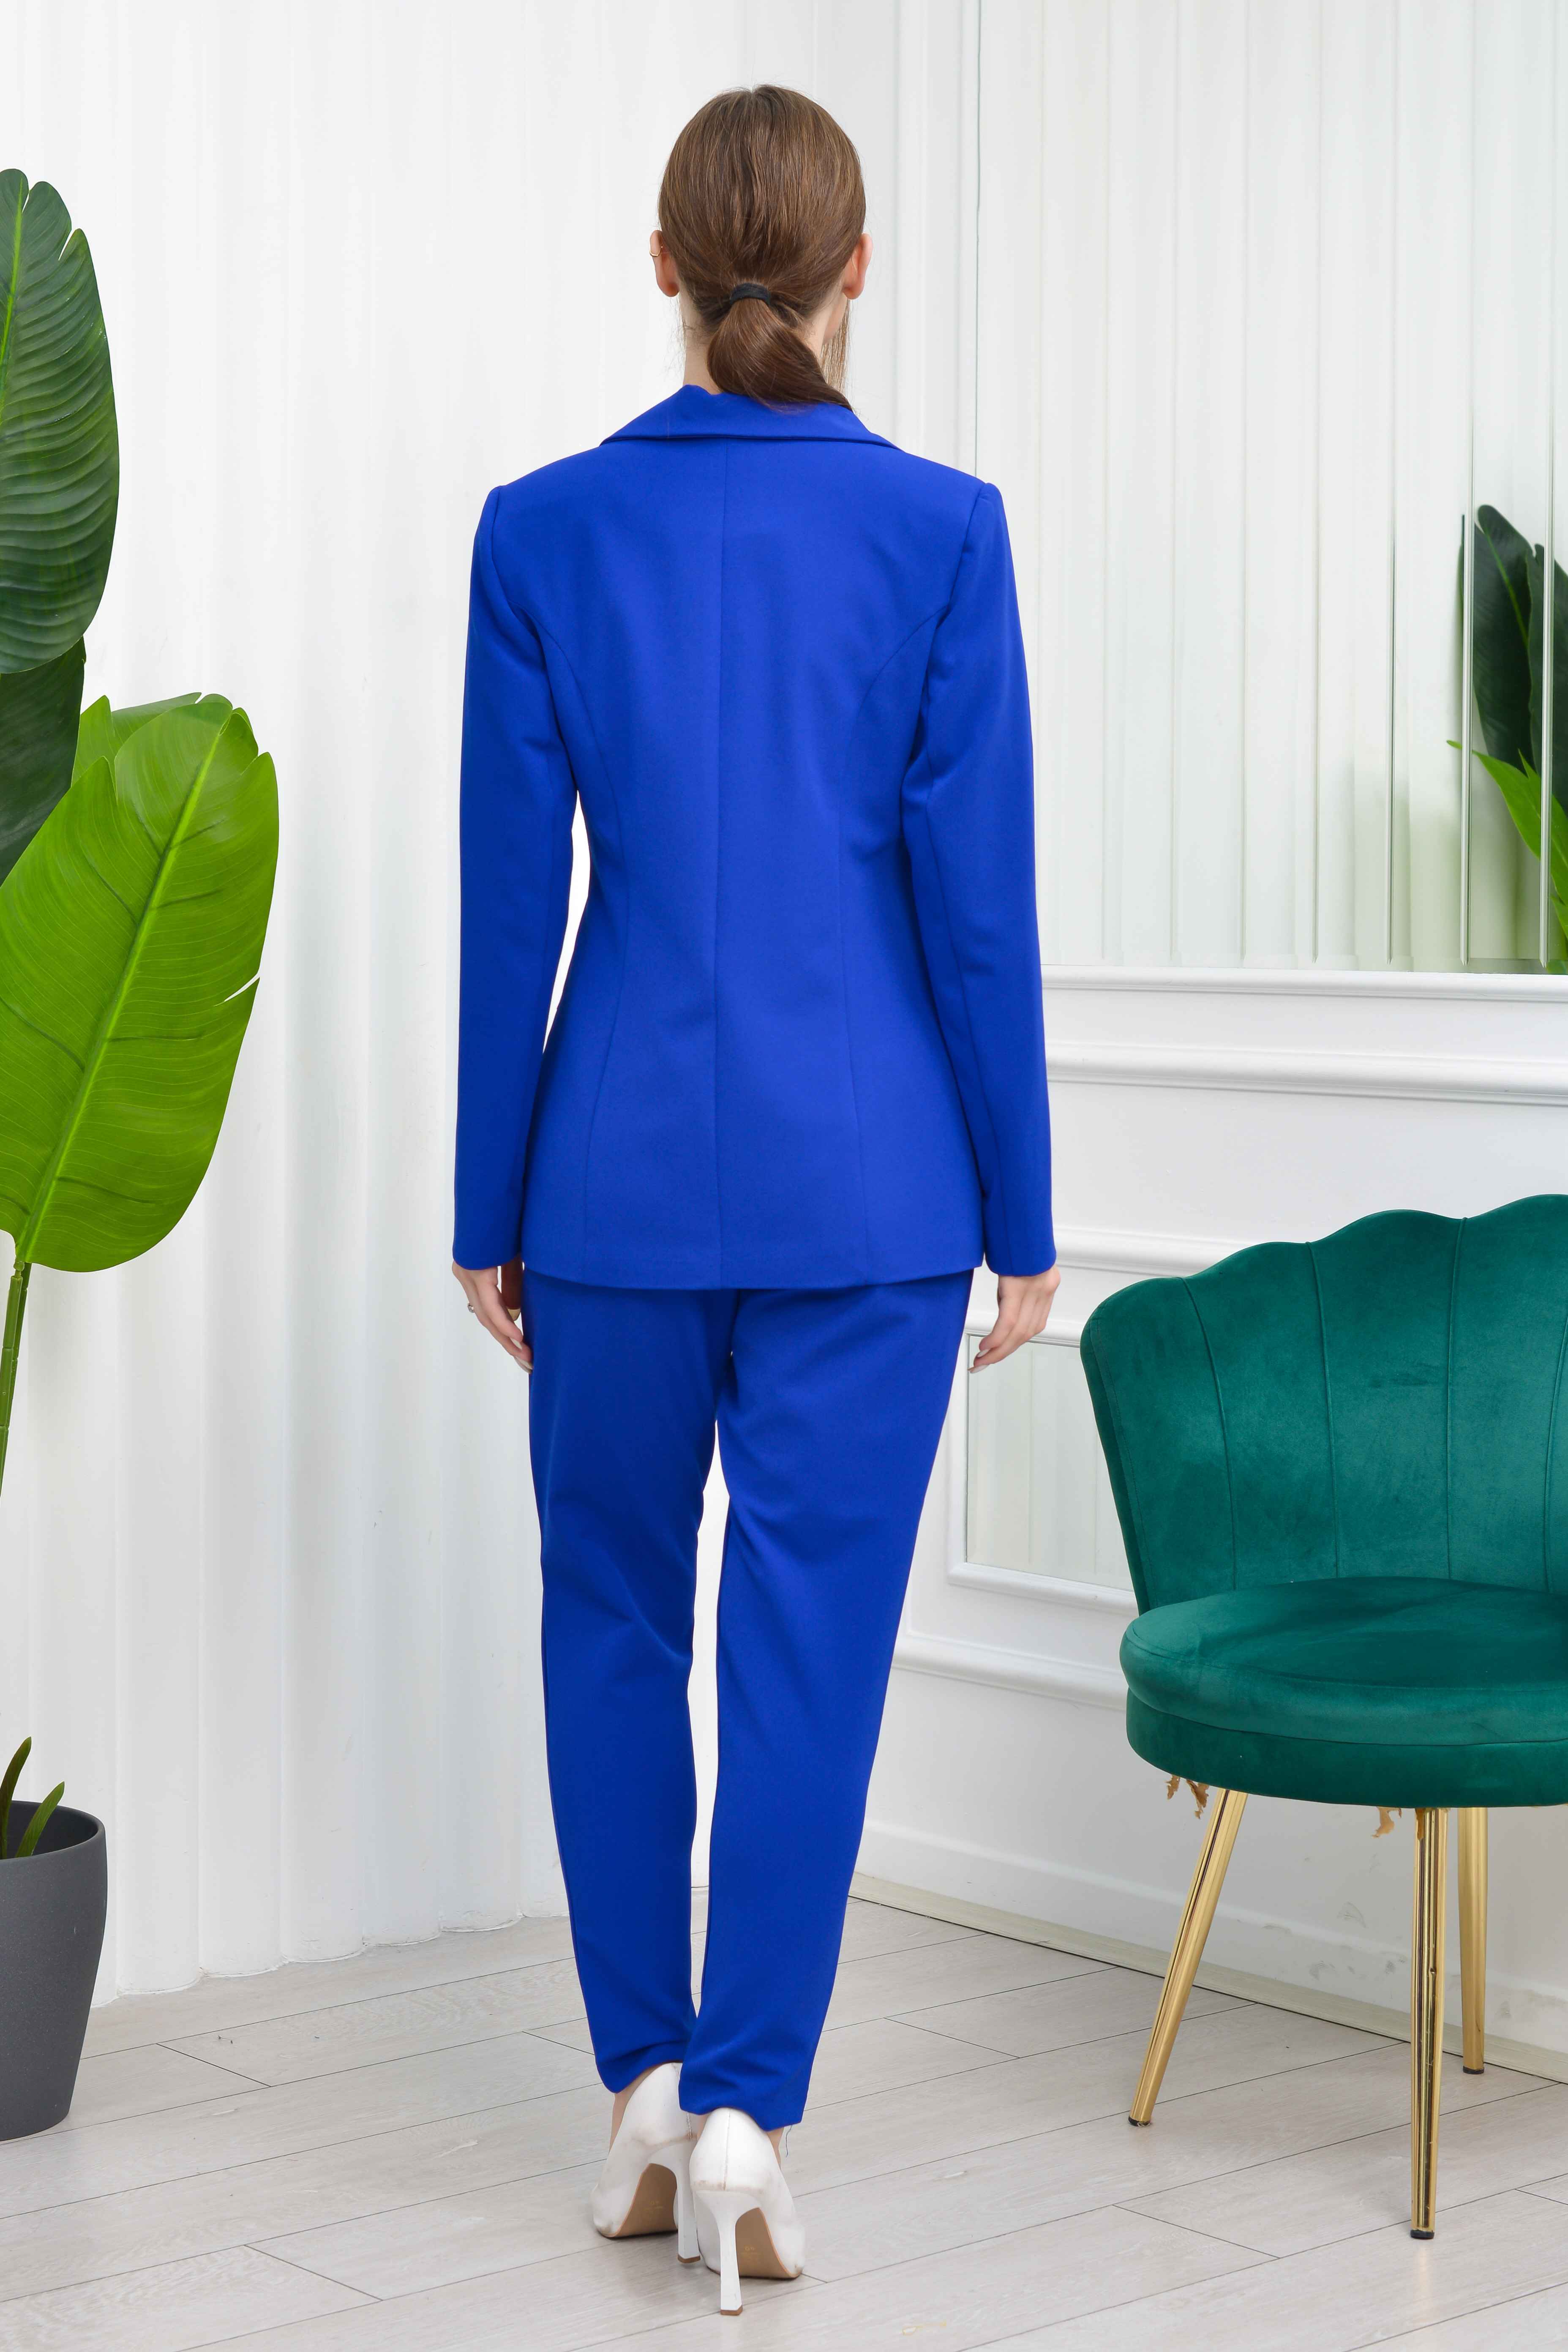 2067 - İthal Atlas Tasarım Ceket Pantolon Büstiyer Takım Elbise